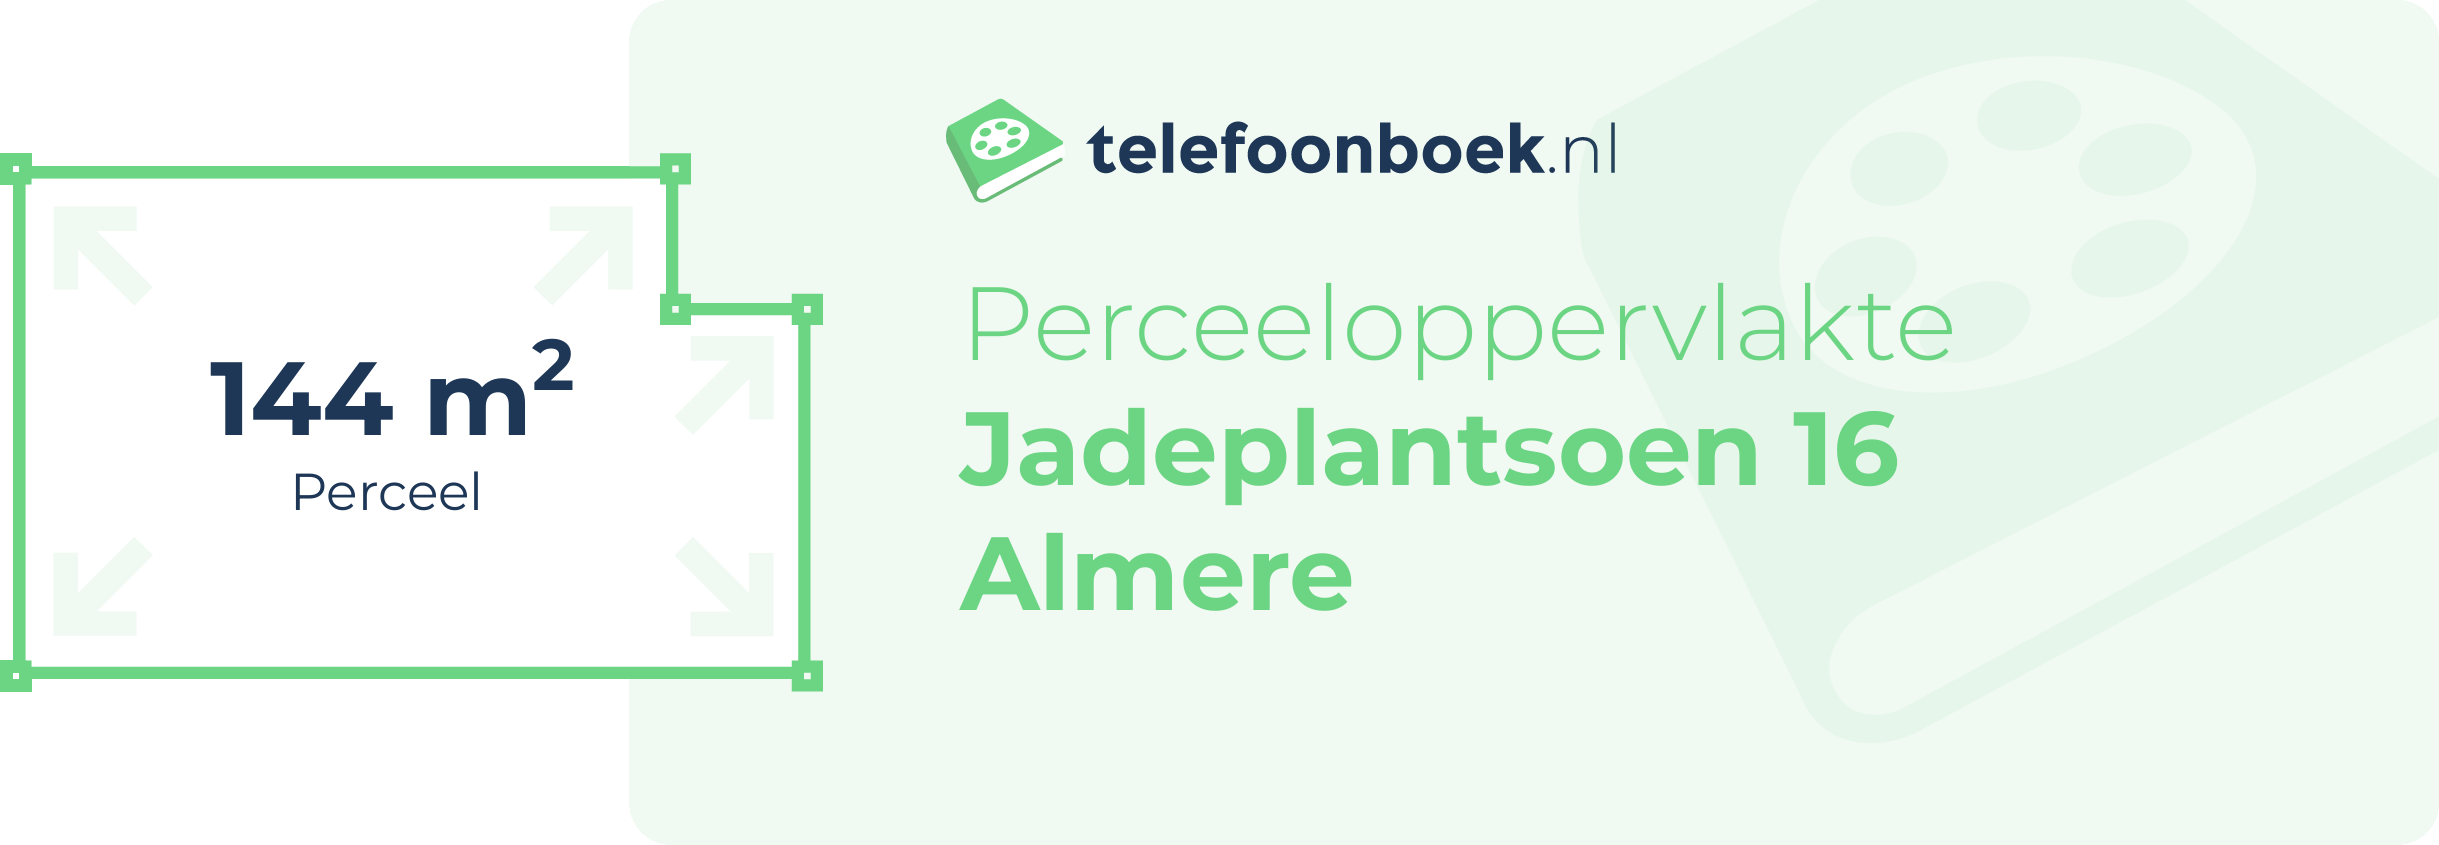 Perceeloppervlakte Jadeplantsoen 16 Almere